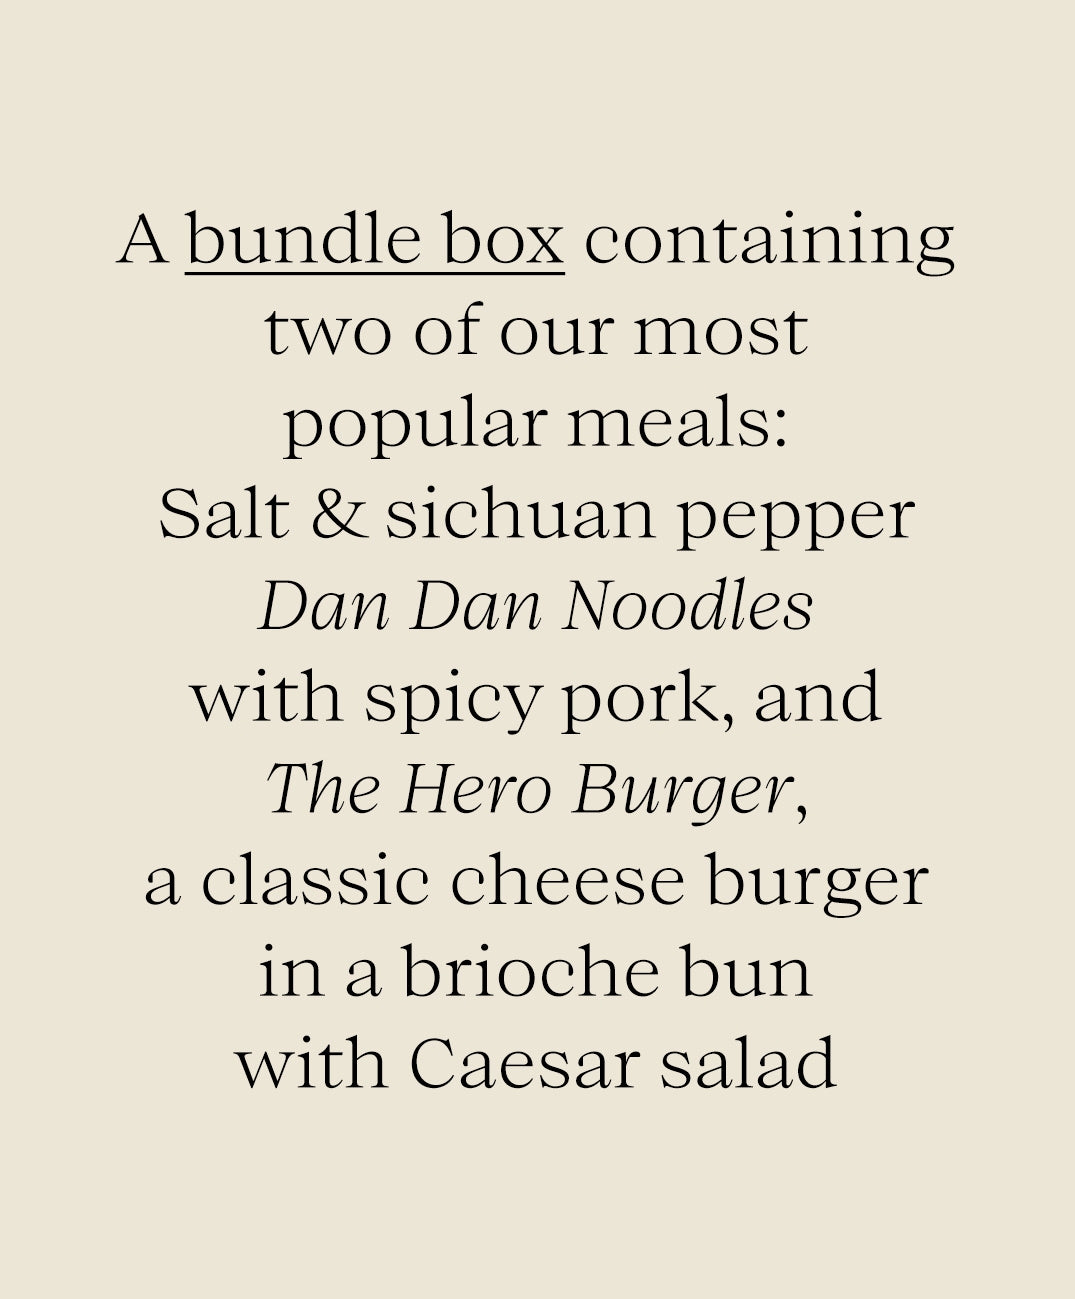 2 Meal Bundle Box - Dan Dan Noodles and The Hero Burger